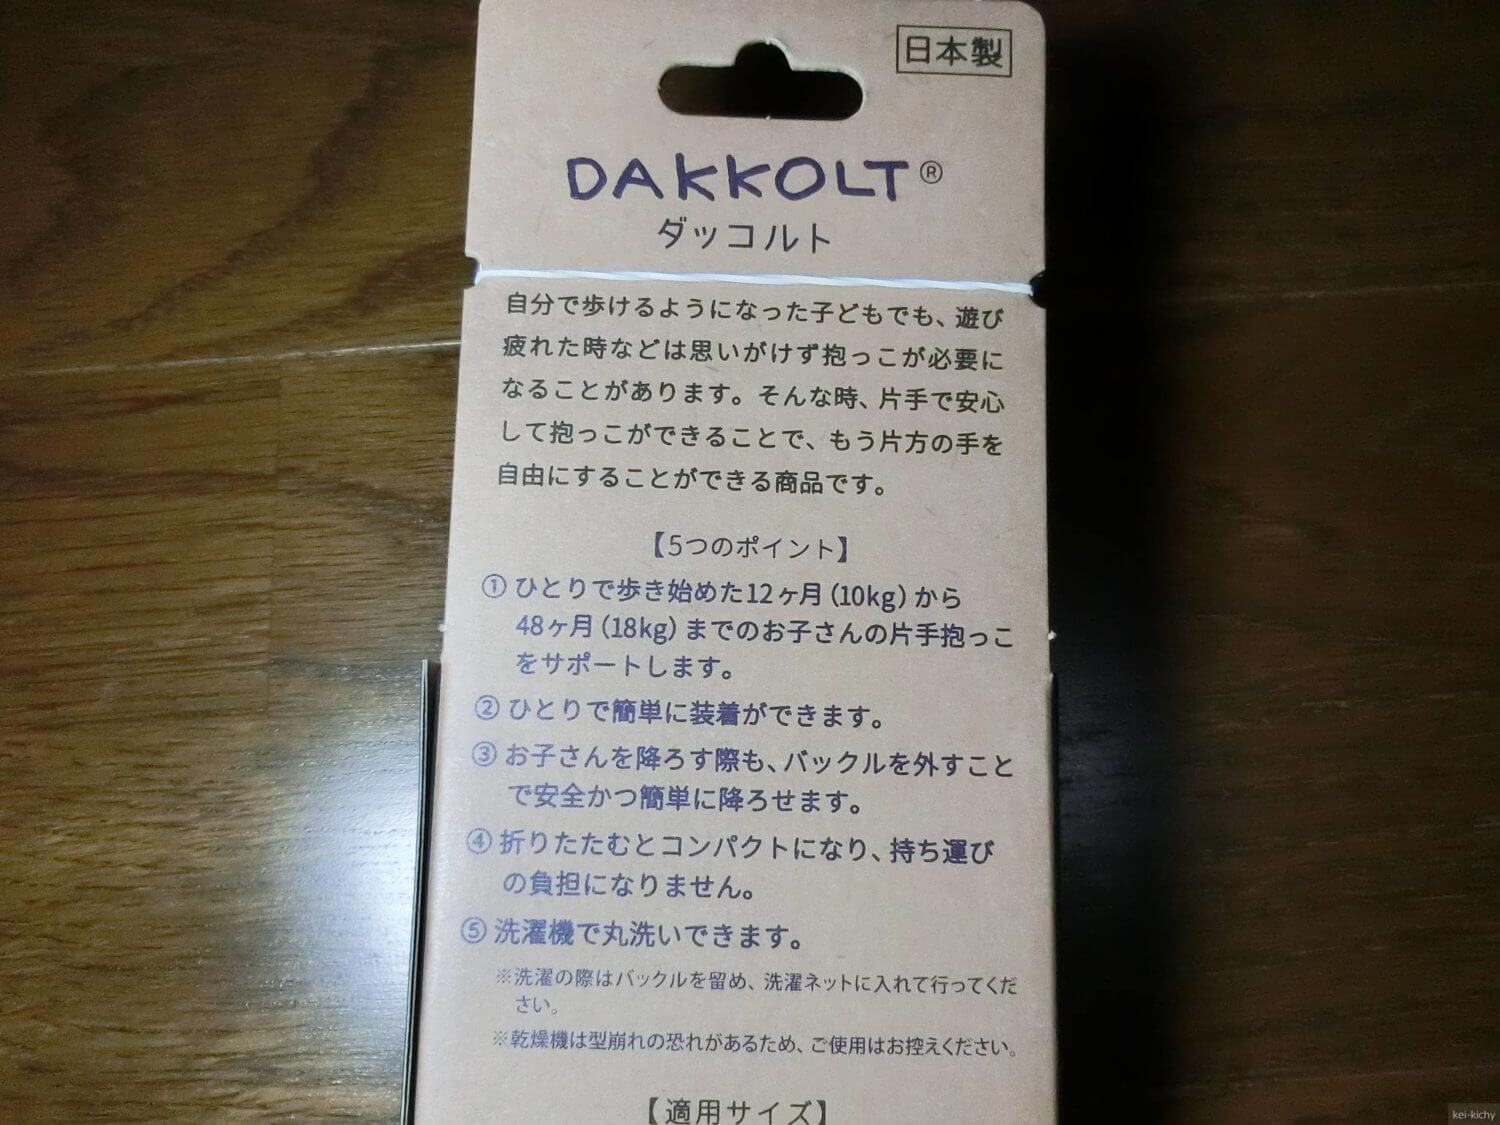 【日本製】簡単抱っこ紐のダッコルトを購入